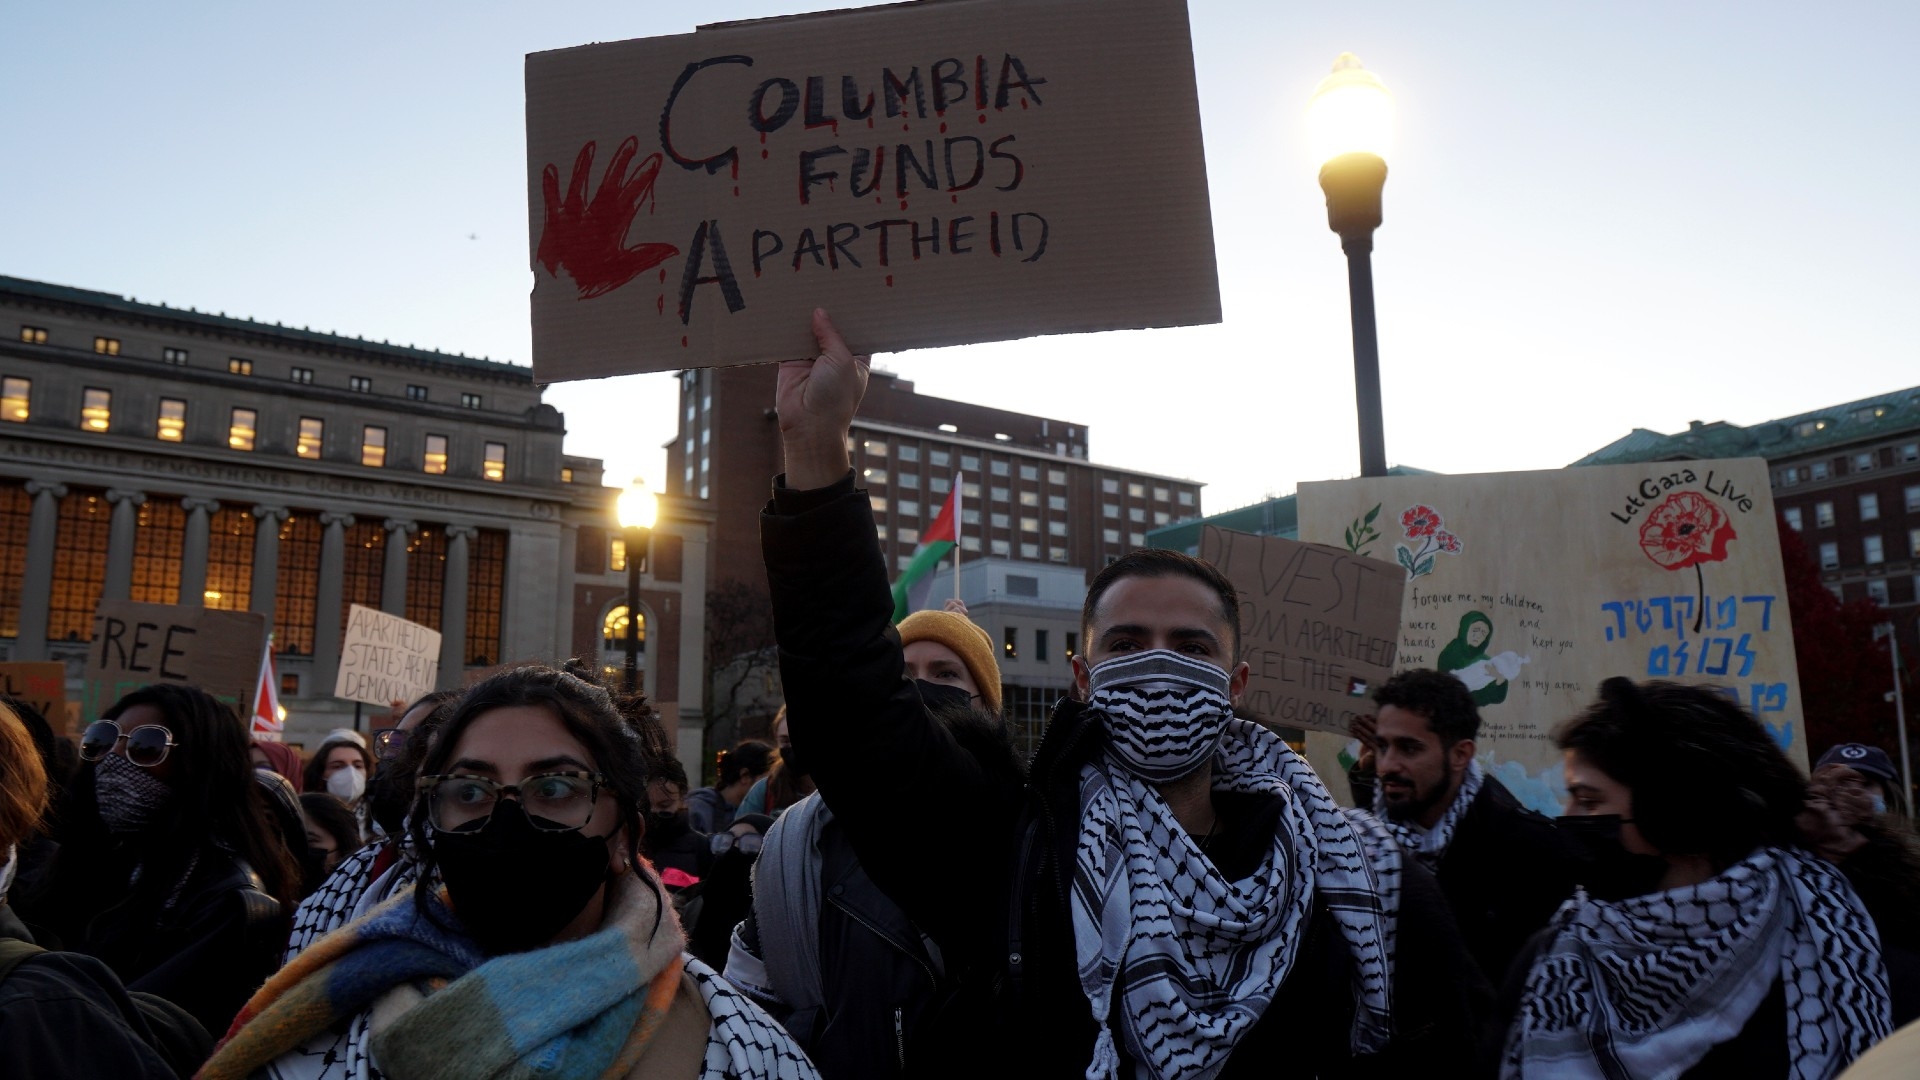 Israel-Palestine war: Columbia students demand reinstatement of